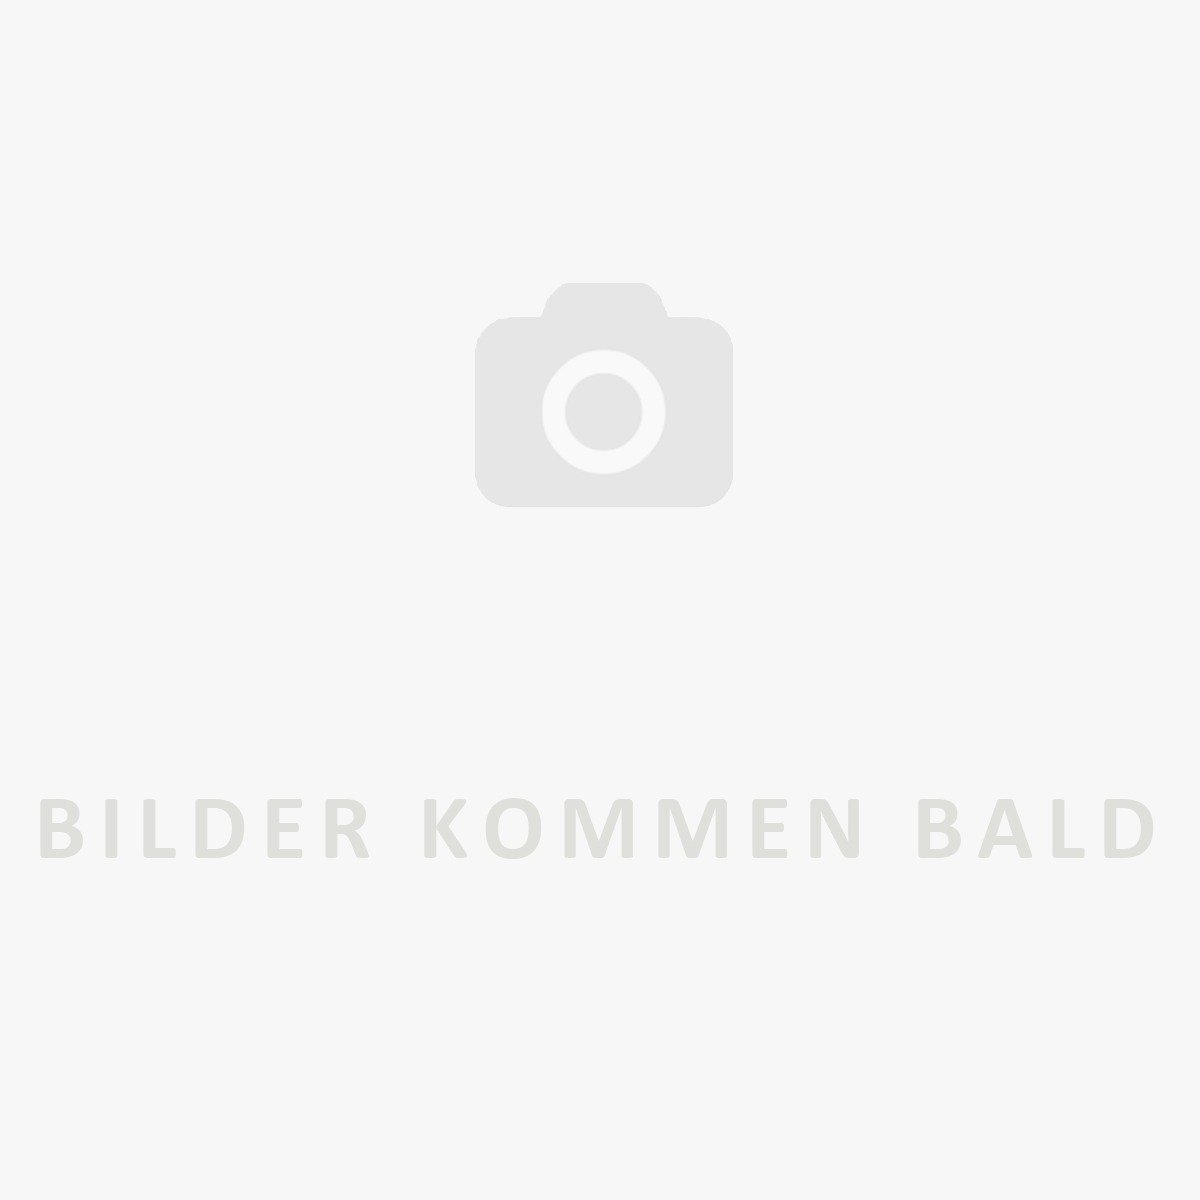 Brainchild Teddybär Klassisches Plakat, Rahmen Aus Schwarzem Alu 70X100 Cm, Sandfarbene Hintergrund-Wanddekoration-Brainchild-367125980-71004-E-BRA-inwohn